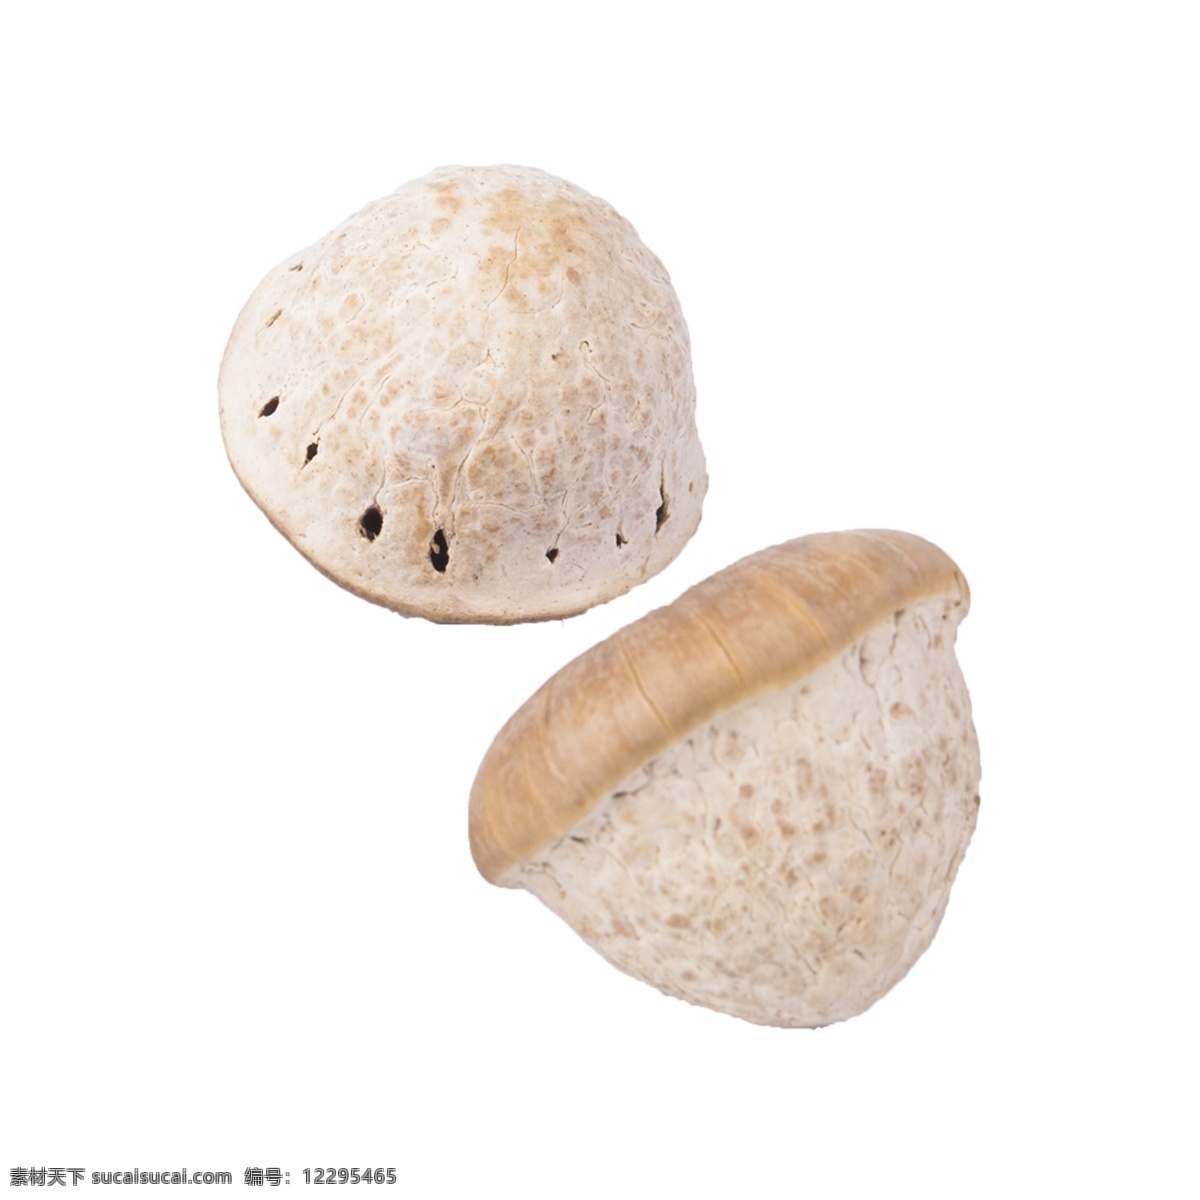 两个 蘑菇 免 抠 两个蘑菇 好吃的蘑菇 好吃的蔬菜 新鲜的蘑菇 新鲜 白蘑菇